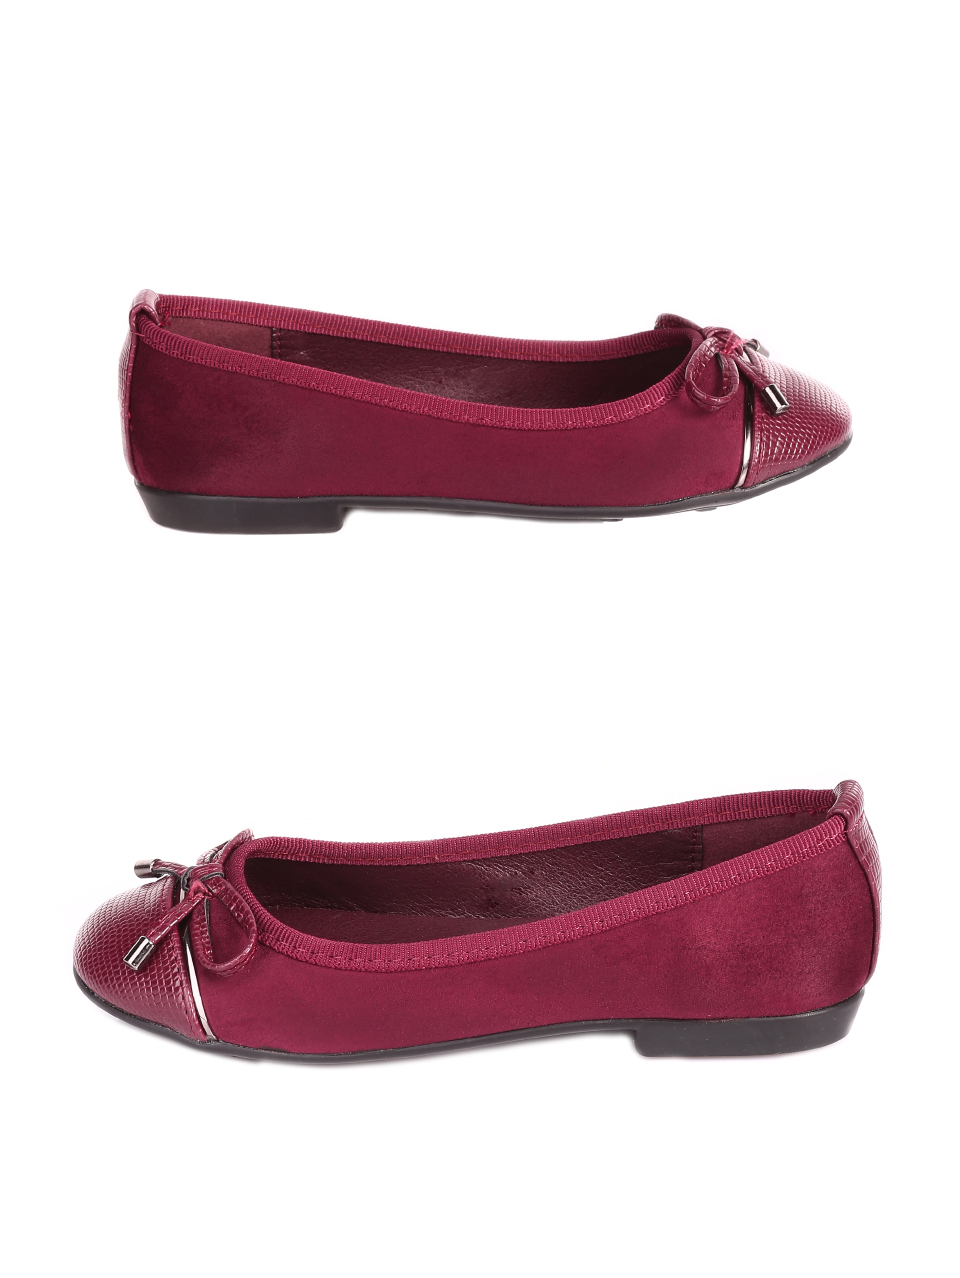 Ежедневни детски обувки в червено 18L-20584 burgundy